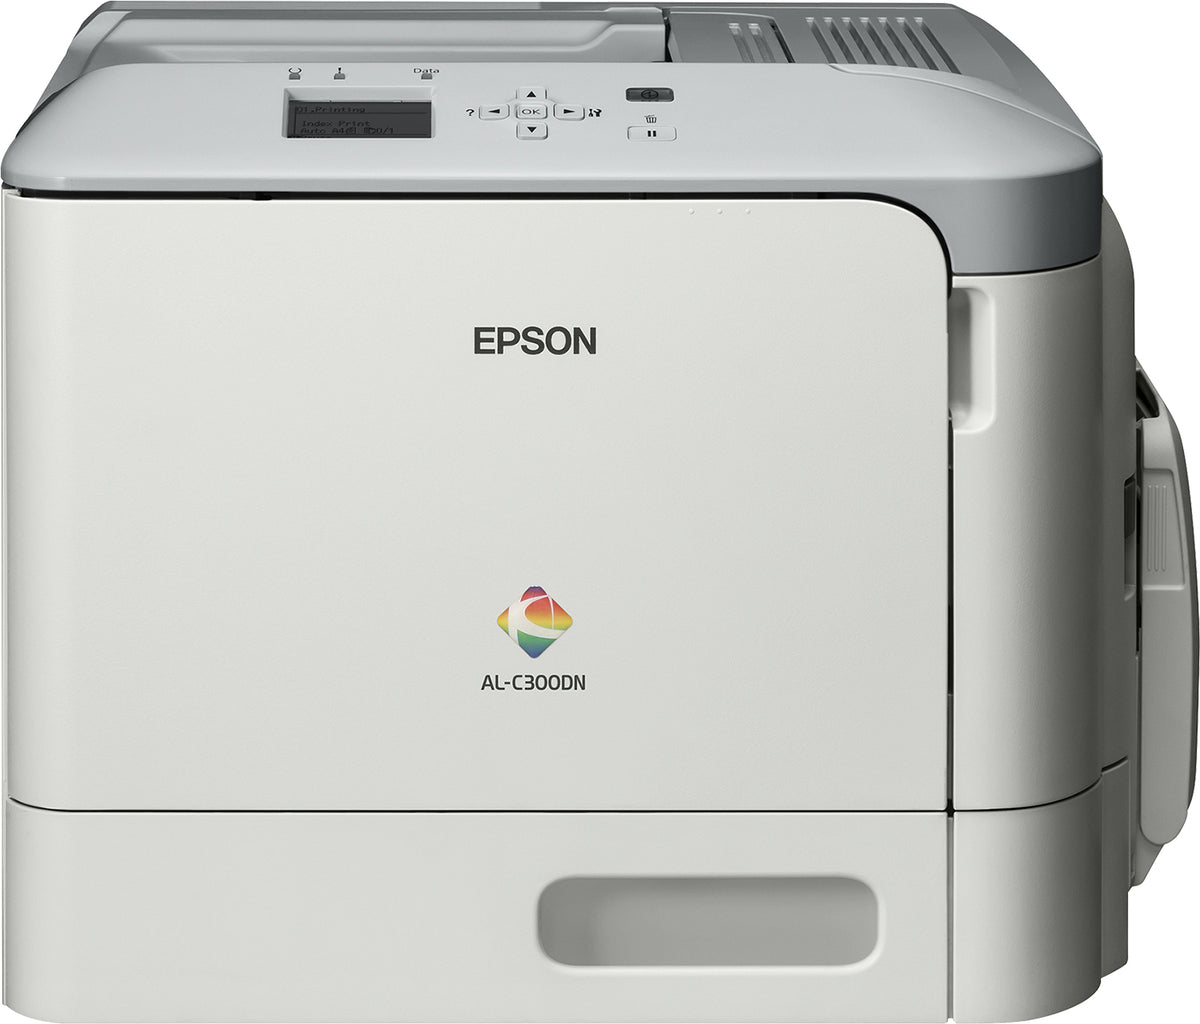 Epson AL-C300DN - Impressora - a cores - Duplex - laser - A4/Legal - 1200 x 1200 ppp - até 31 ppm (mono)/ até 31 ppm (cor) - capacidade: 350 folhas - USB 2.0, Gigabit LAN, host USB